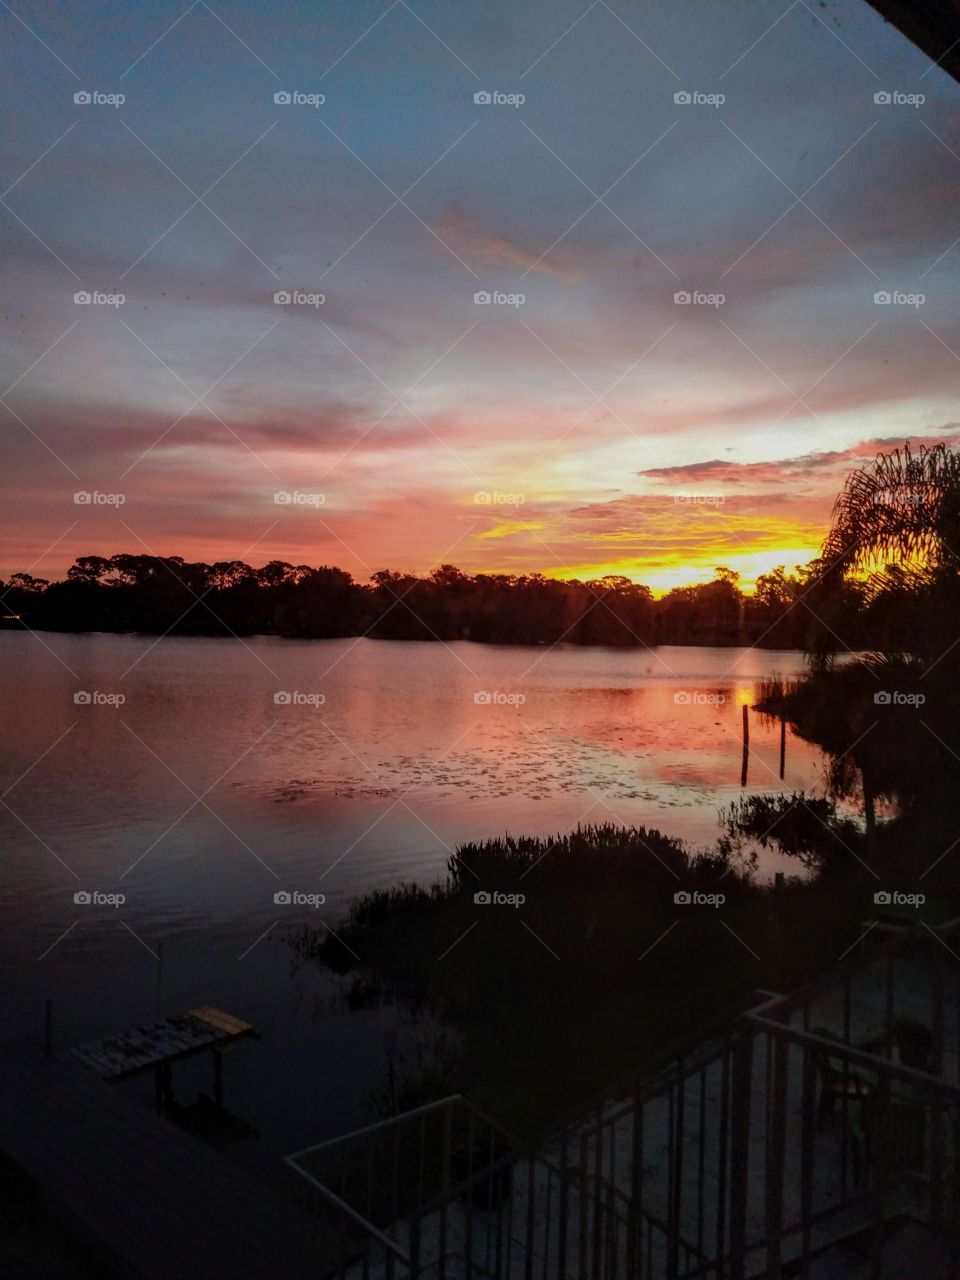 Sunrise on Florida lake